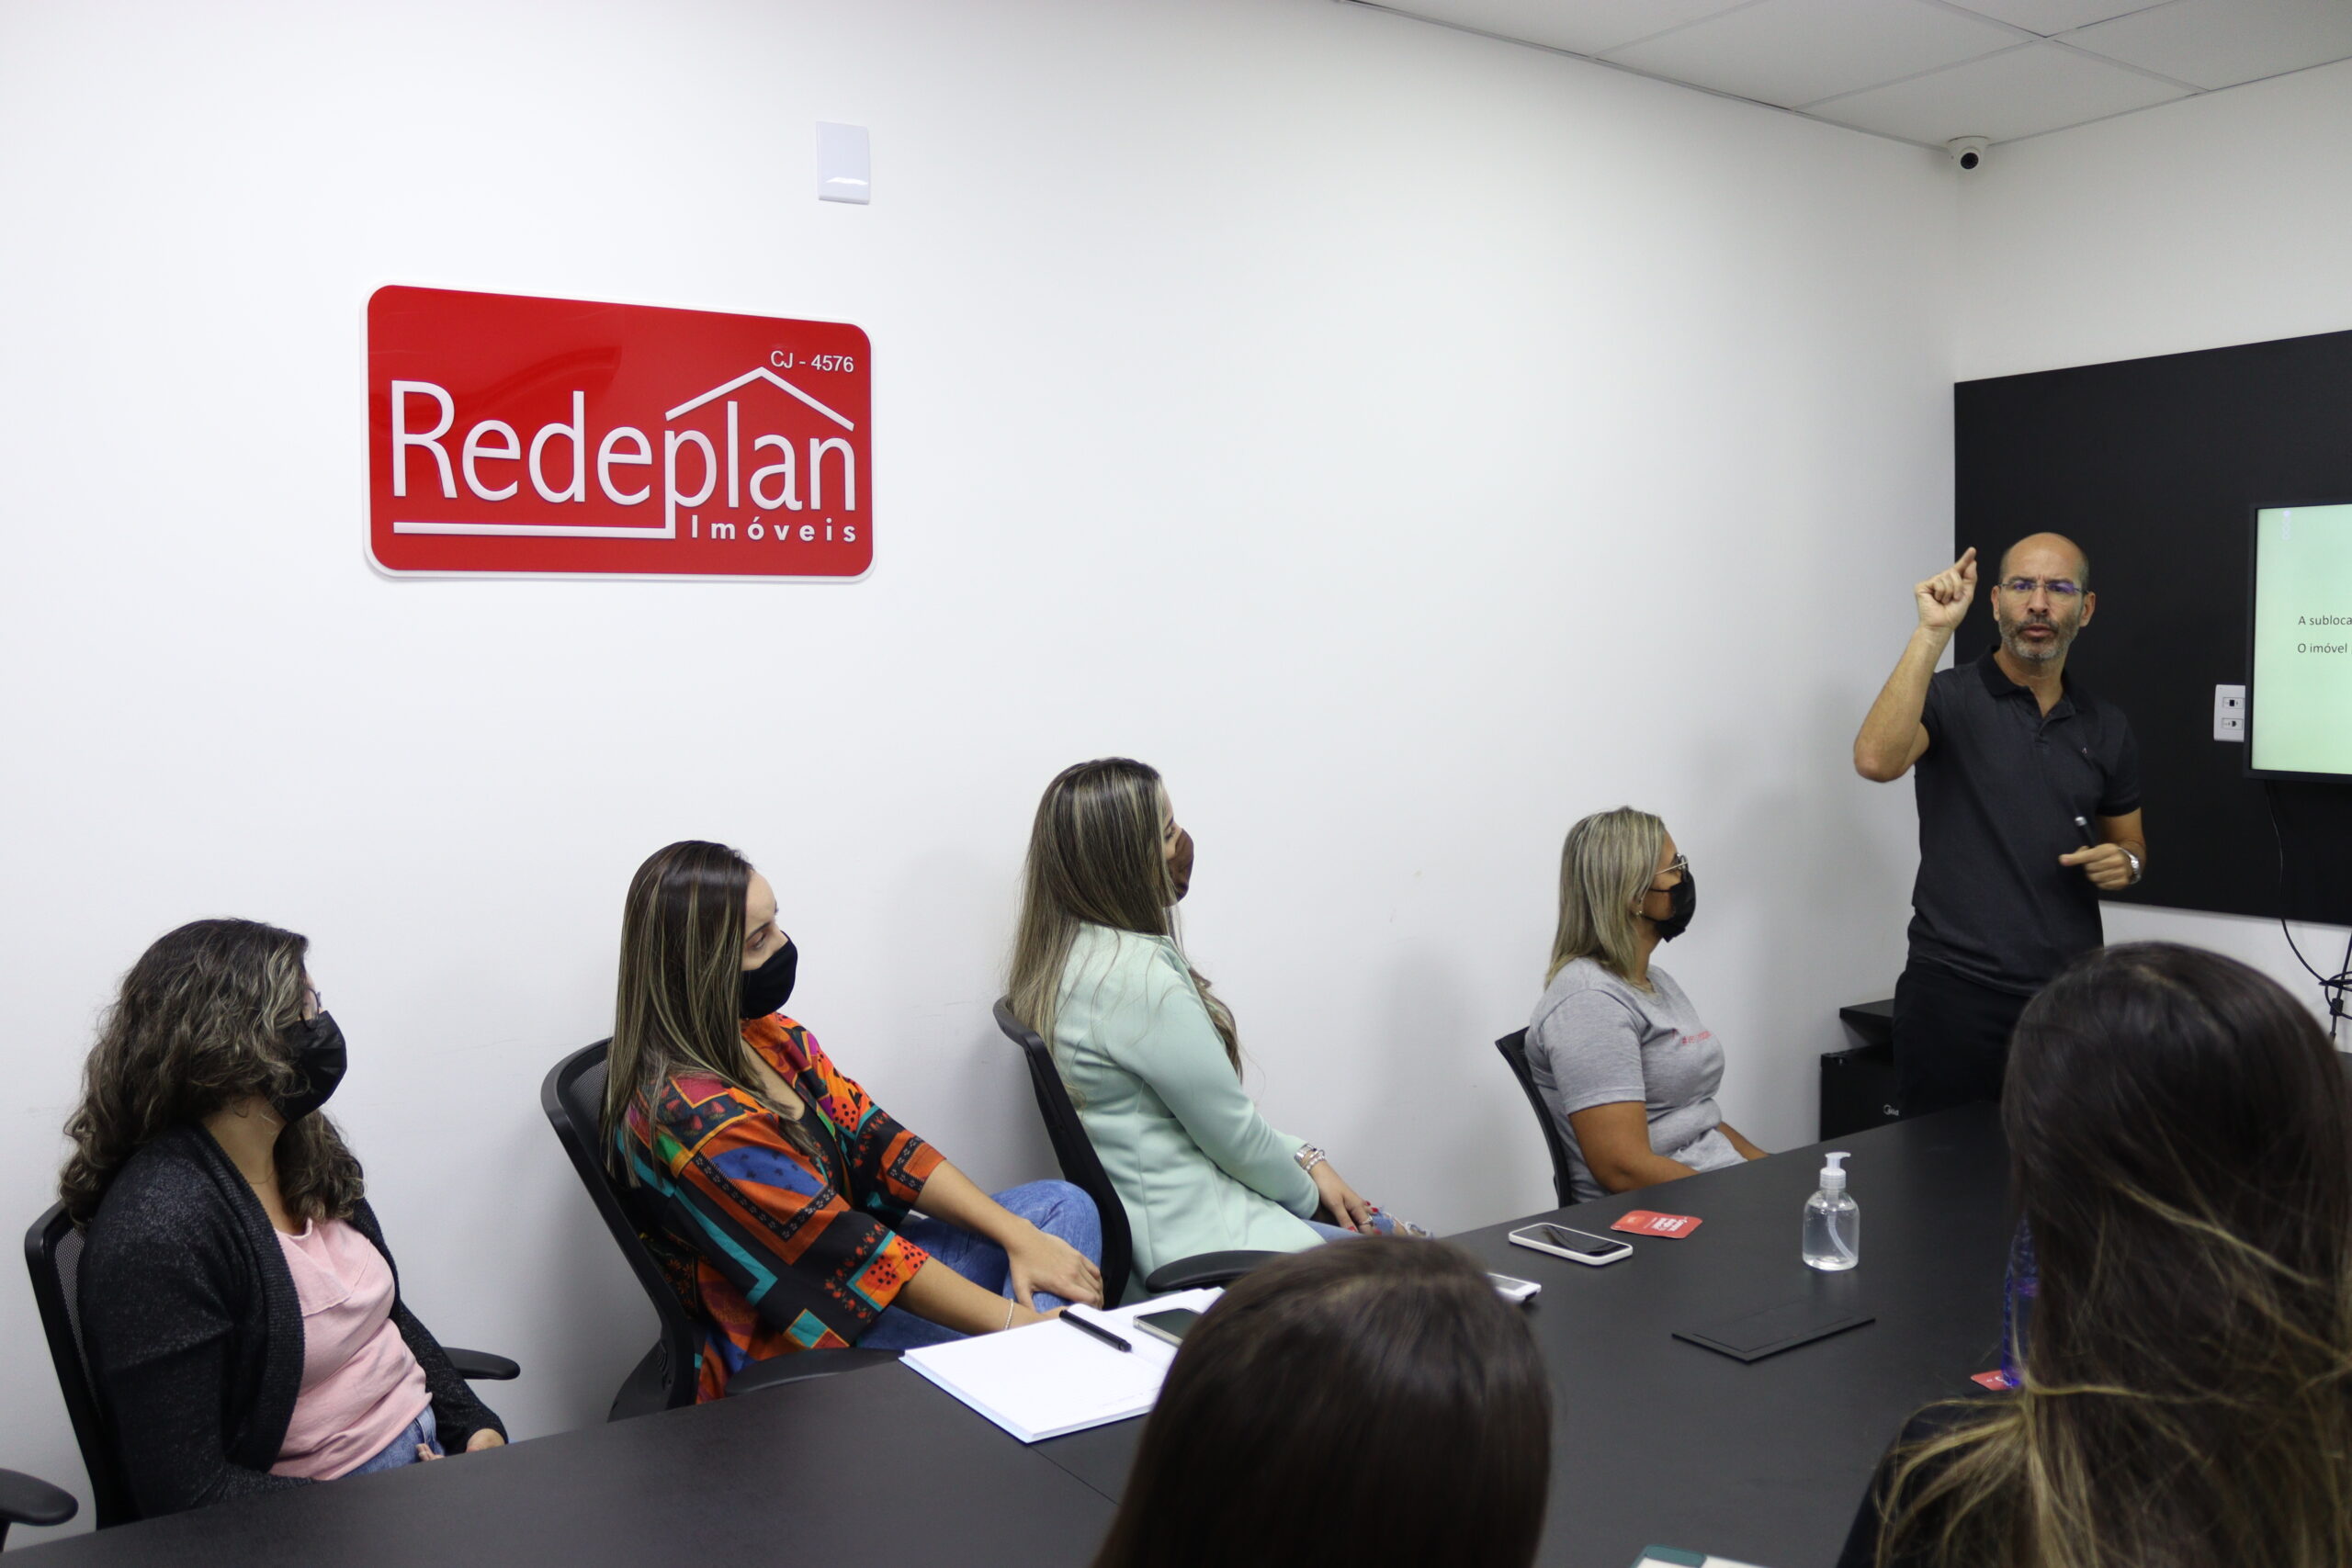 Diretor da Redeplan, José Francisco, ministrando o treinamento para a equipe de locação, administrativo e comercial na sala de reuniões da empresa.